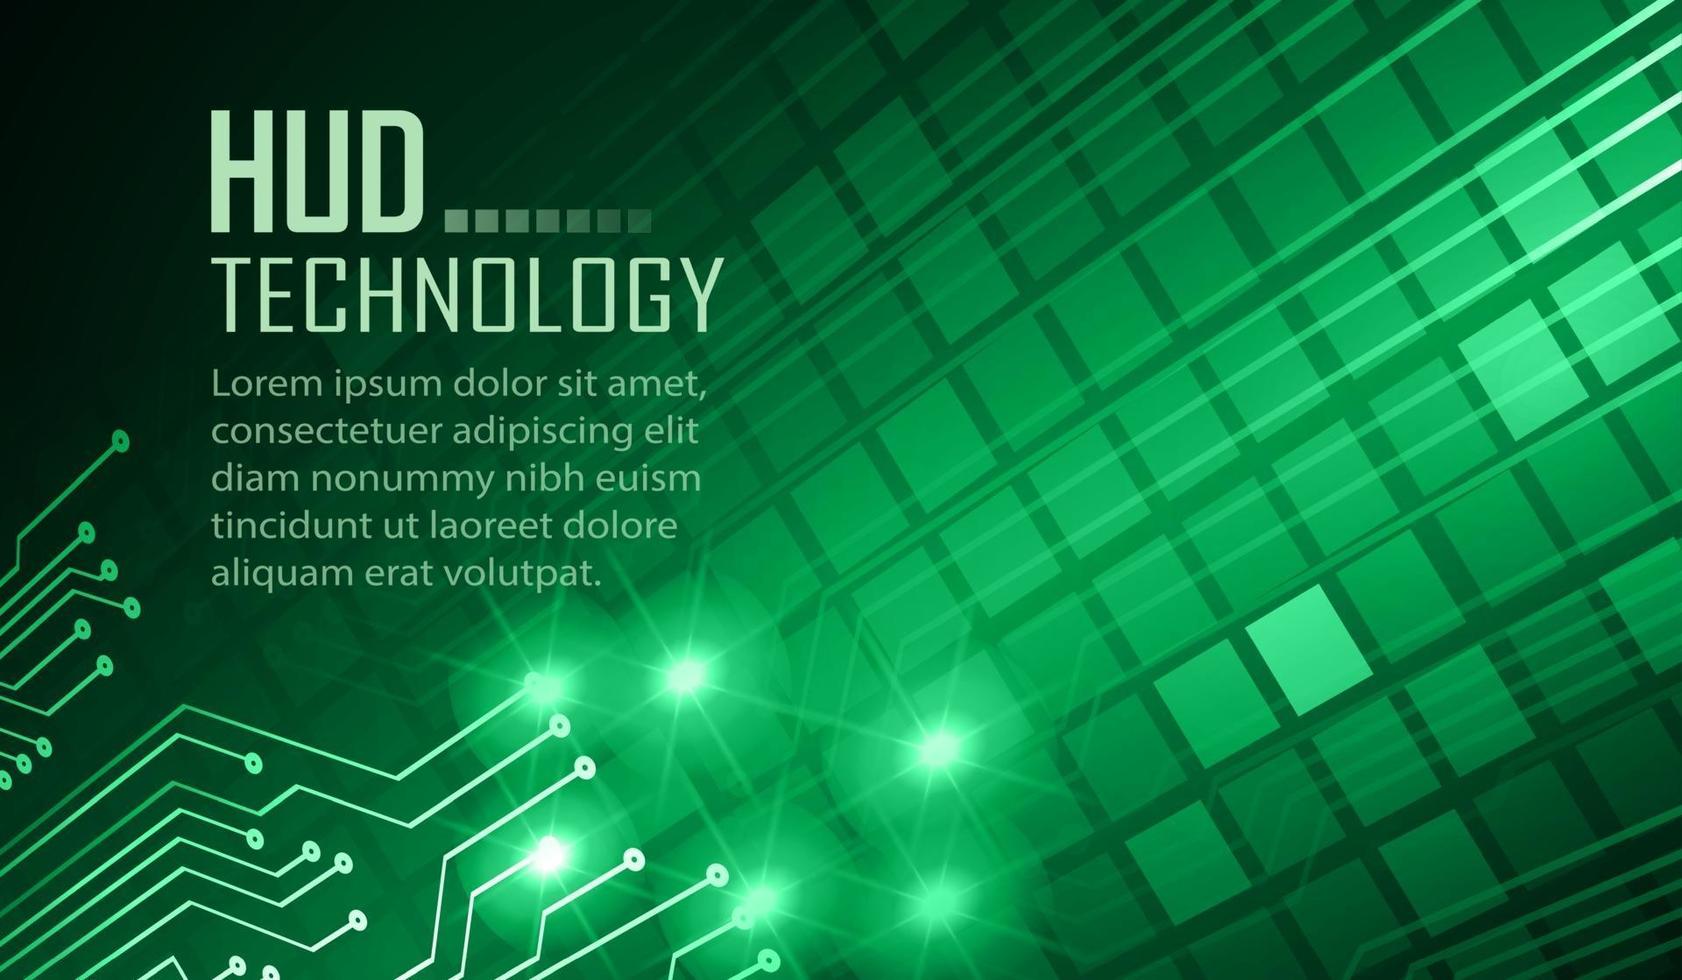 Cyber-Circuit-Zukunftstechnologie-Konzepthintergrund, Text vektor